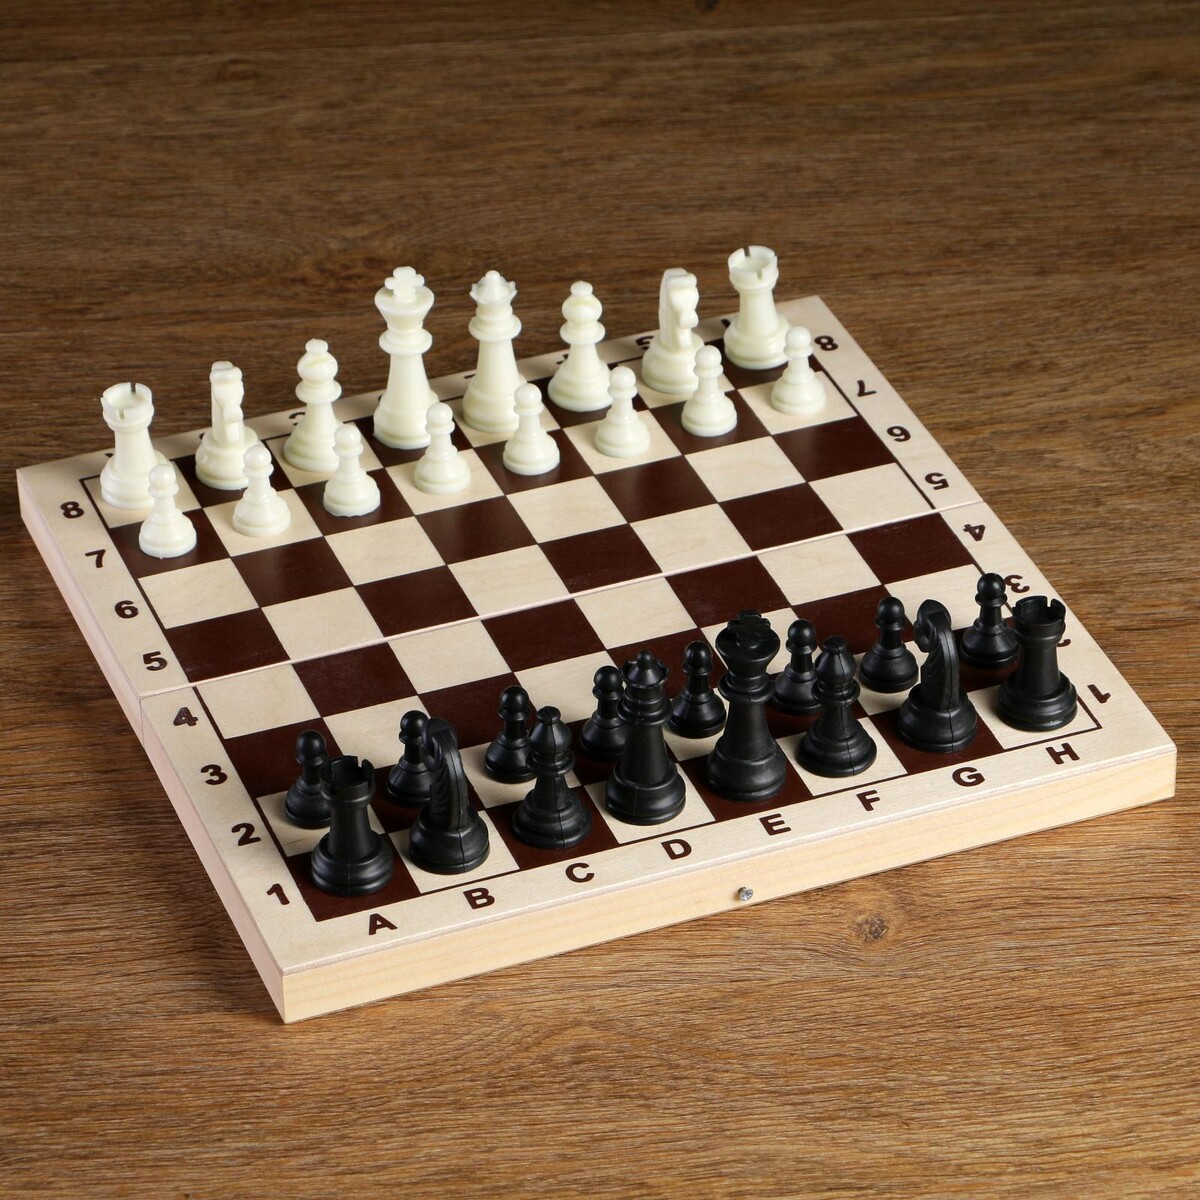 Шахматные фигуры, пластик, король h-6.2 см, пешка h-3 см александр l карагеоргиевич православный король югославии